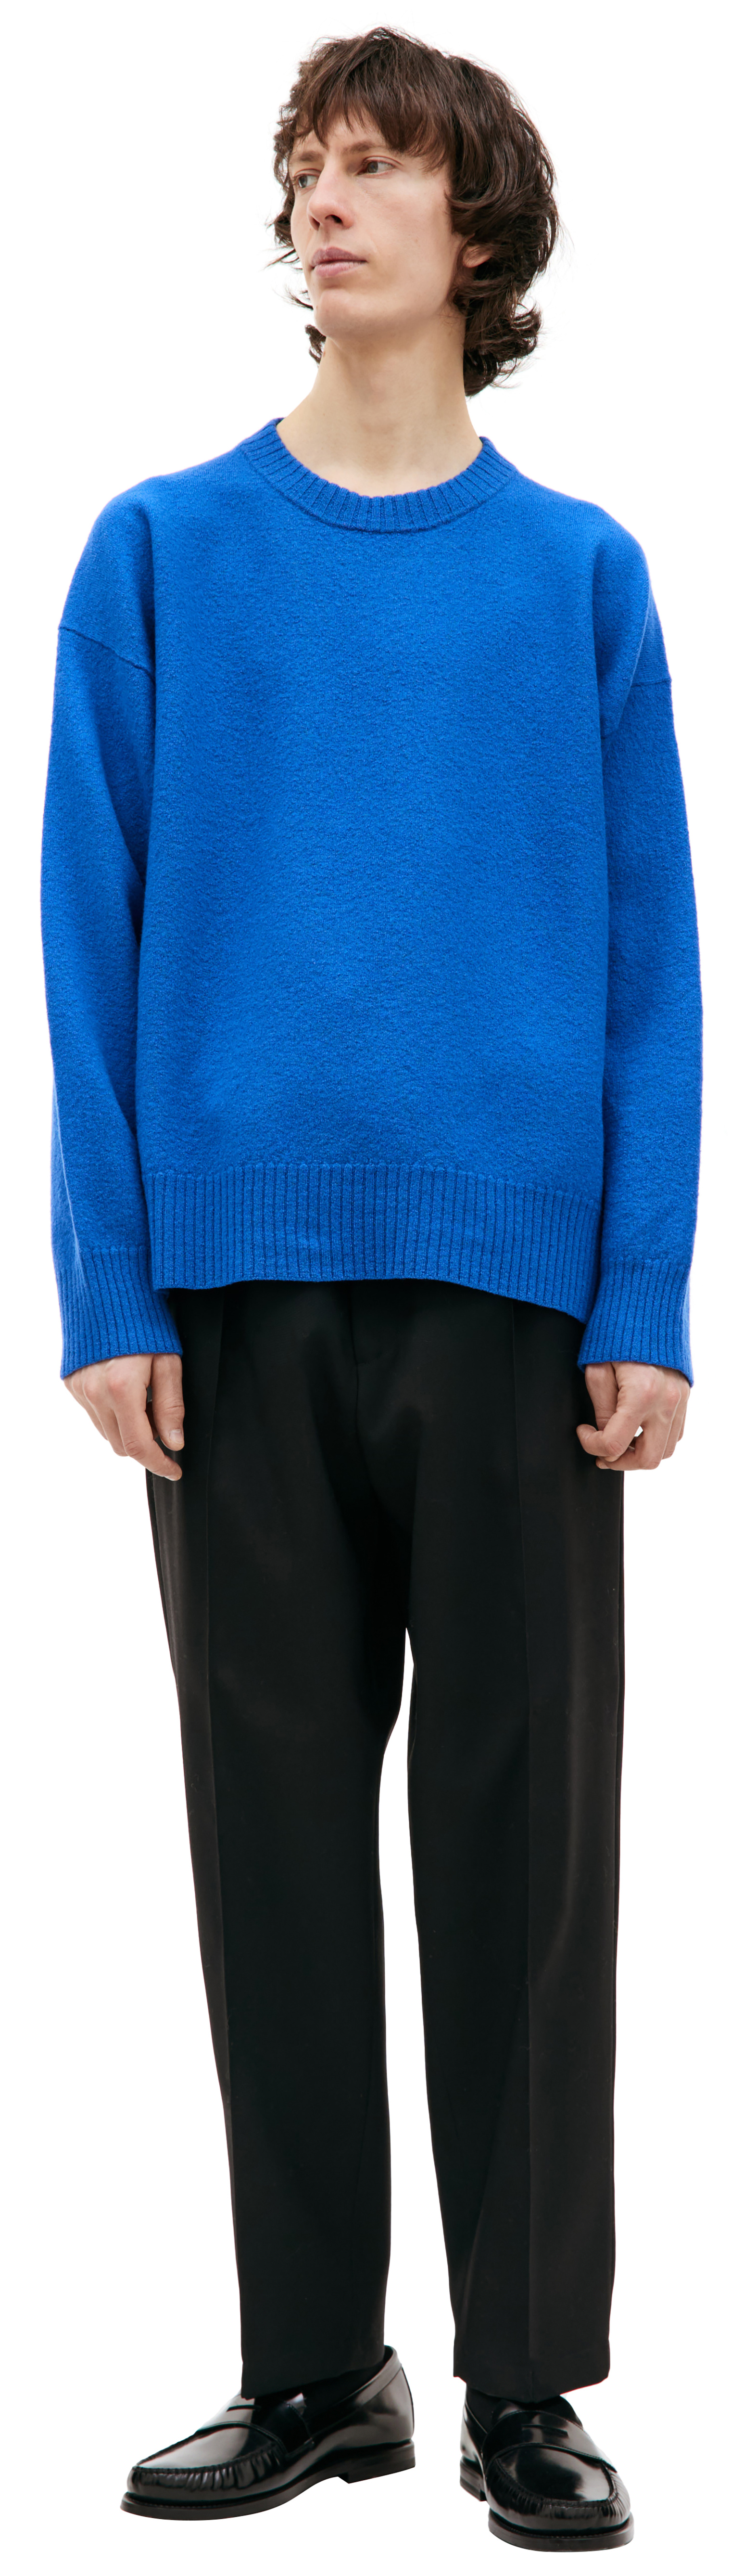 Jil Sander Шерстяной свитер с разрезами